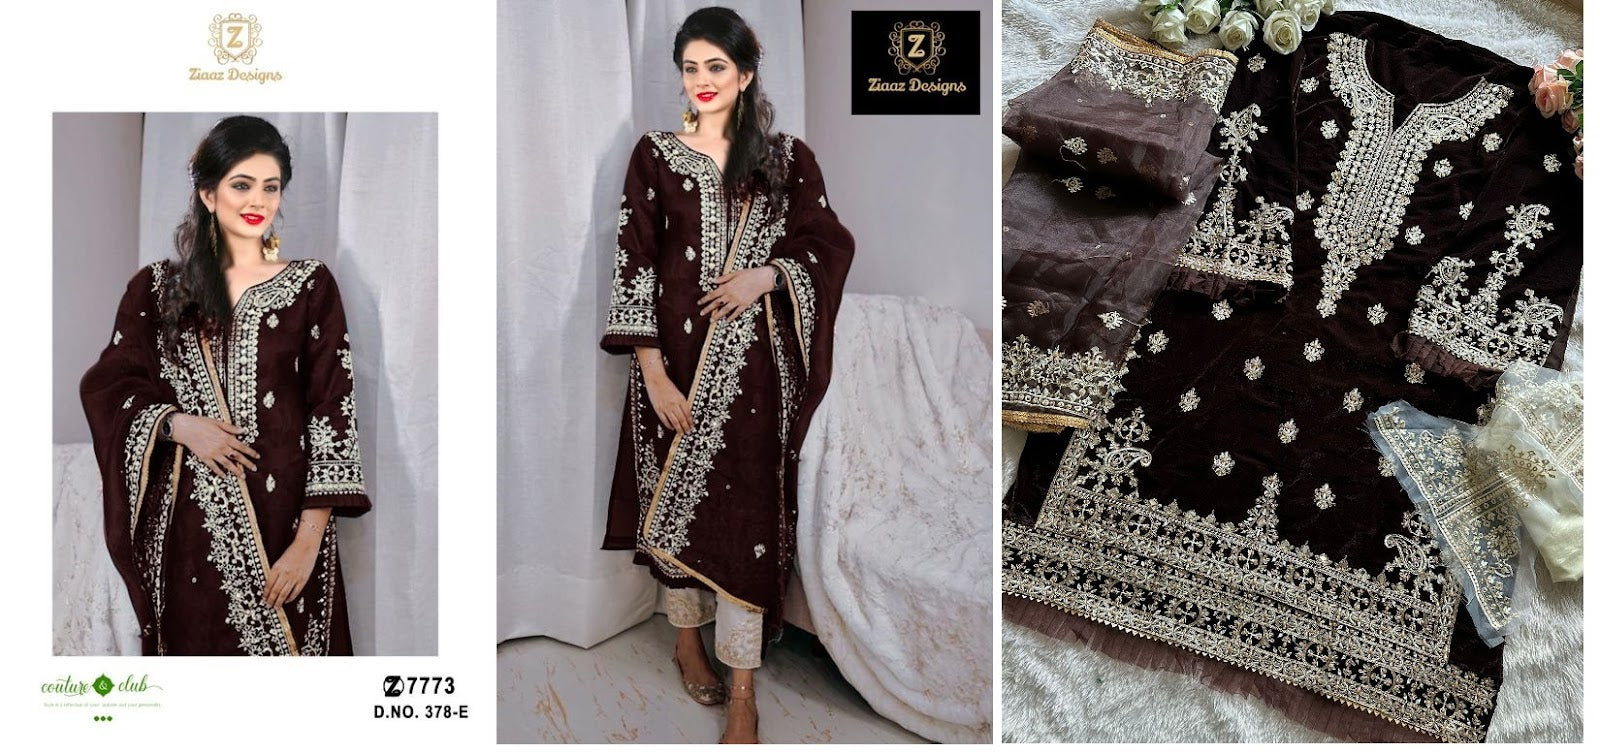 378 Ce Ziaaz Designs Velvet Suits